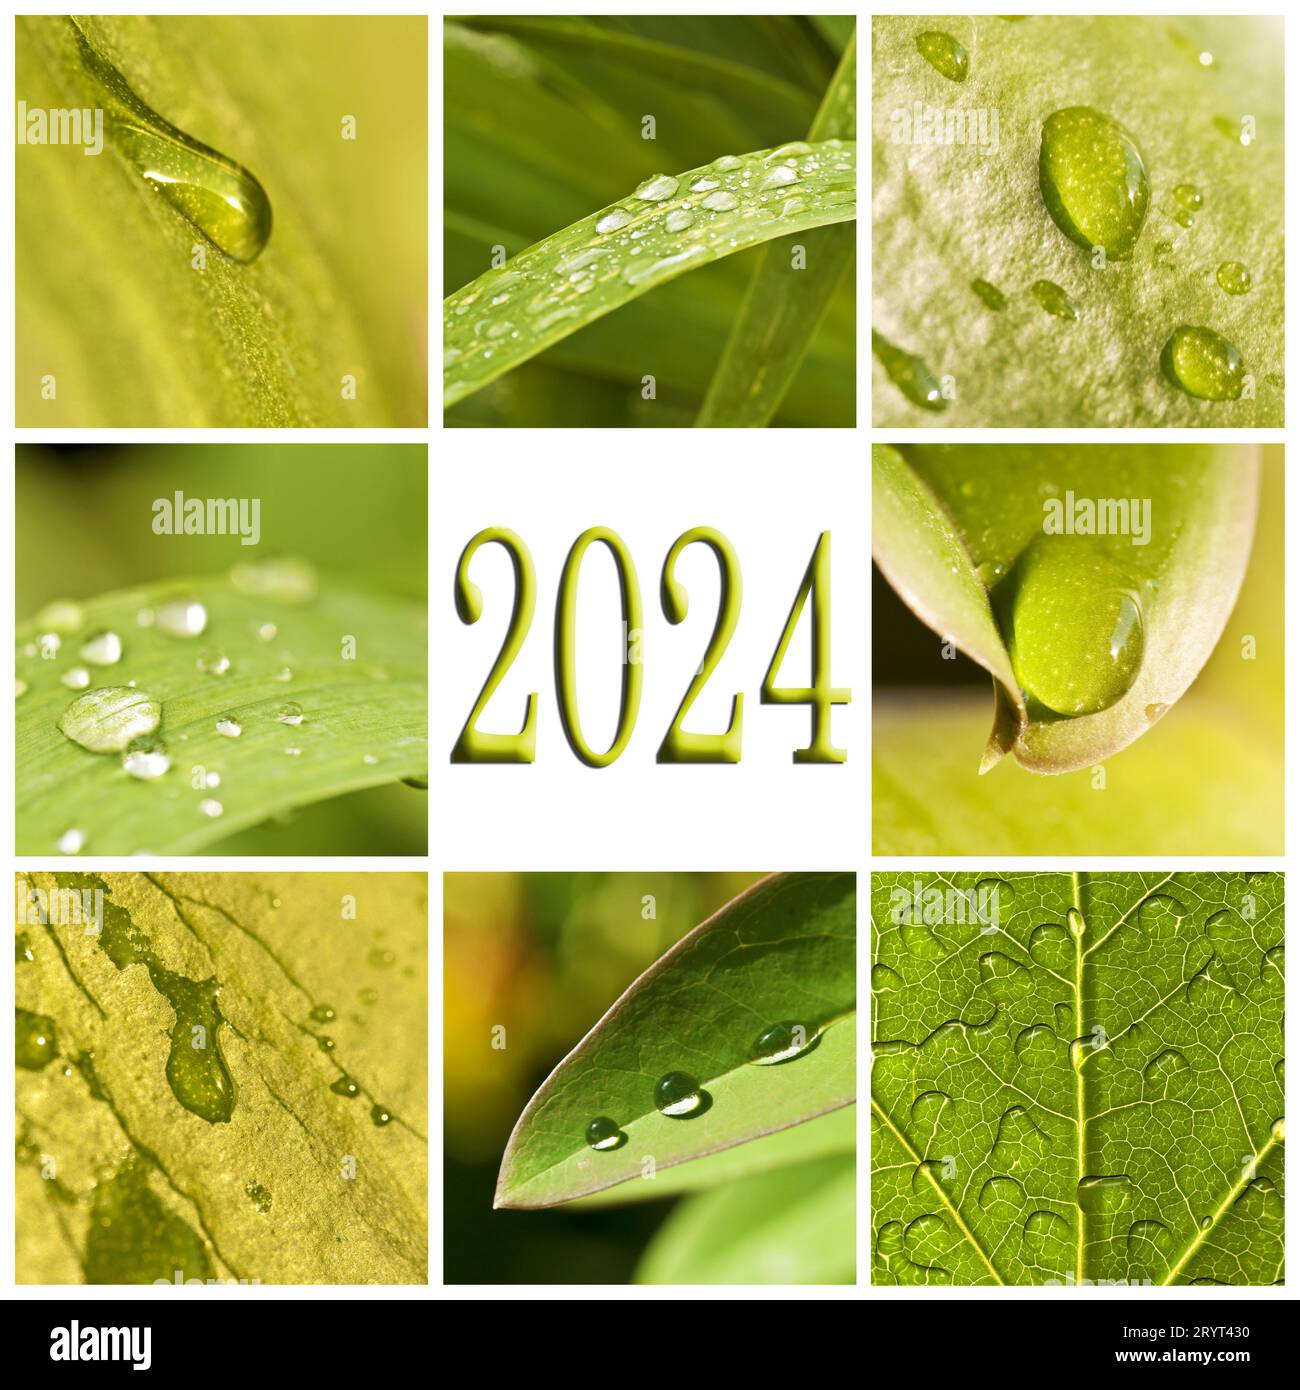 2024, foglie verdi e gocce di pioggia, collage fotografico, natura e concetto di acqua Foto Stock